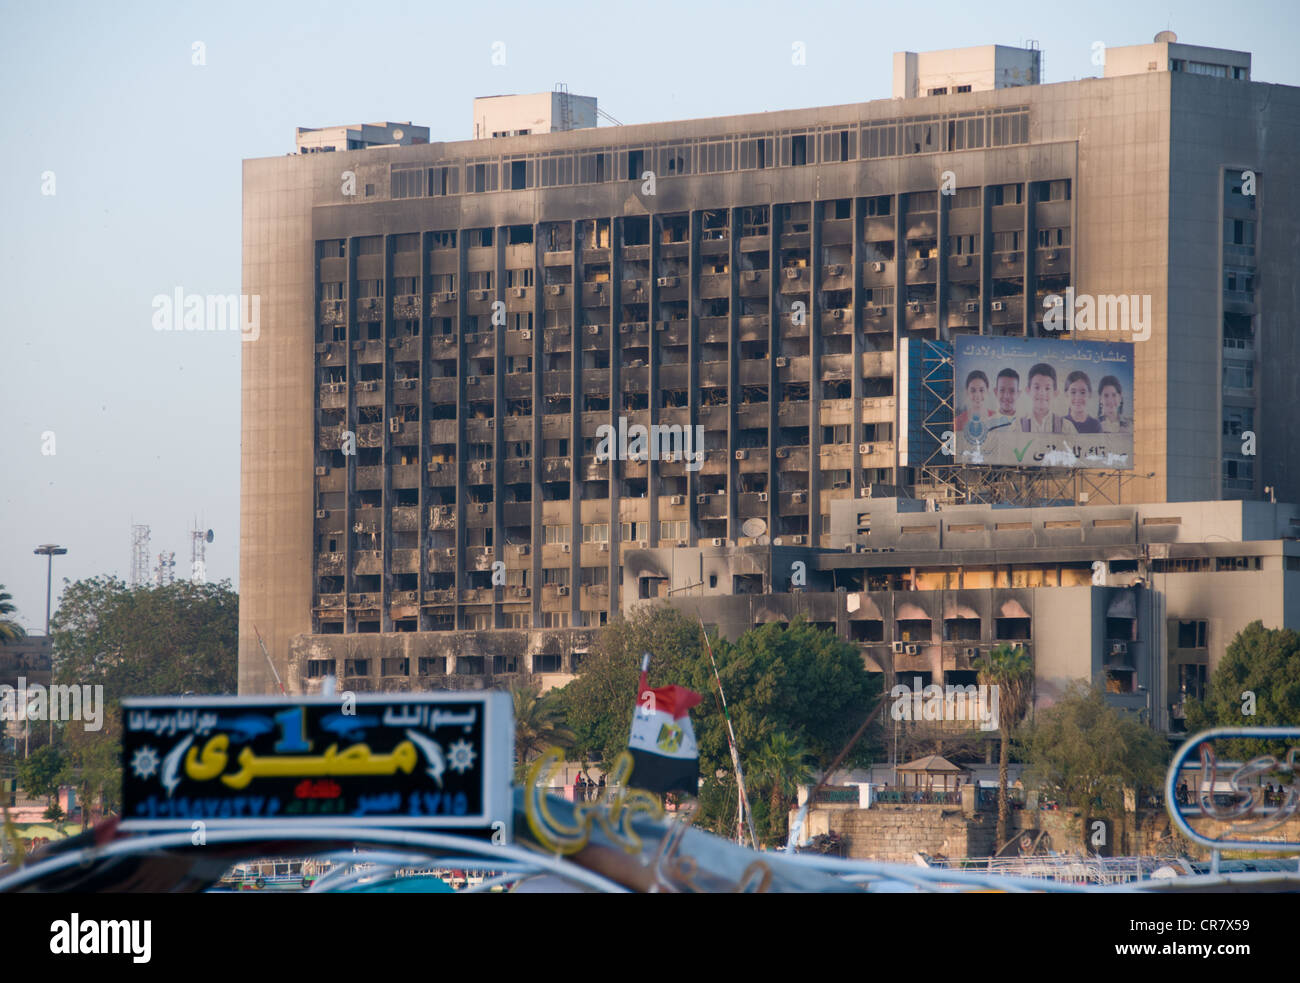 Brûlé de l'administration centrale du parti néo-démocrate au Caire en Egypte au Musée (incendié le 28 février 2011)pendant la révolution Banque D'Images